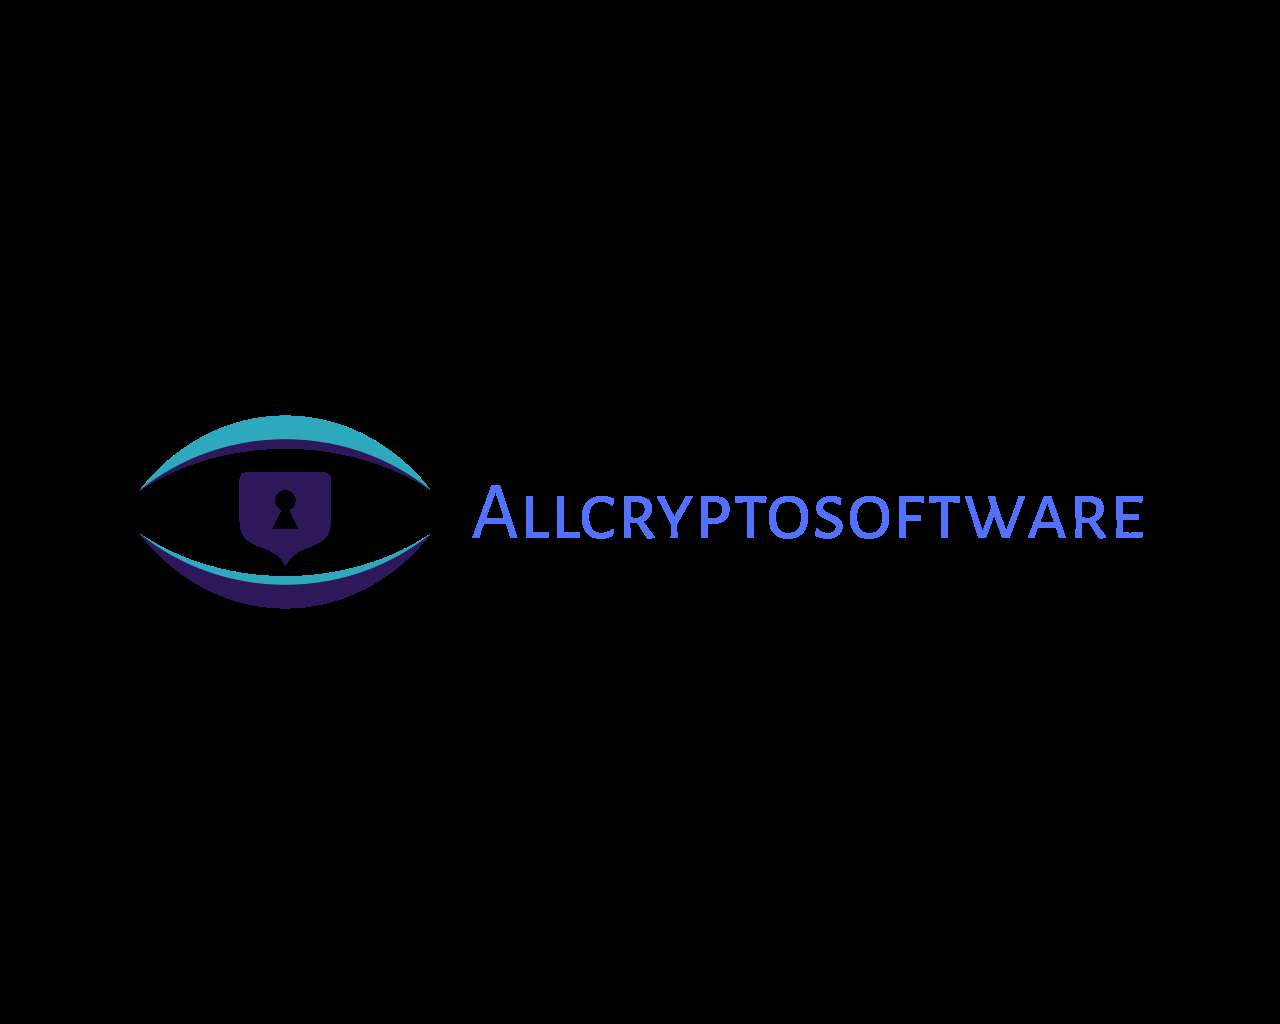 Allcryptosof